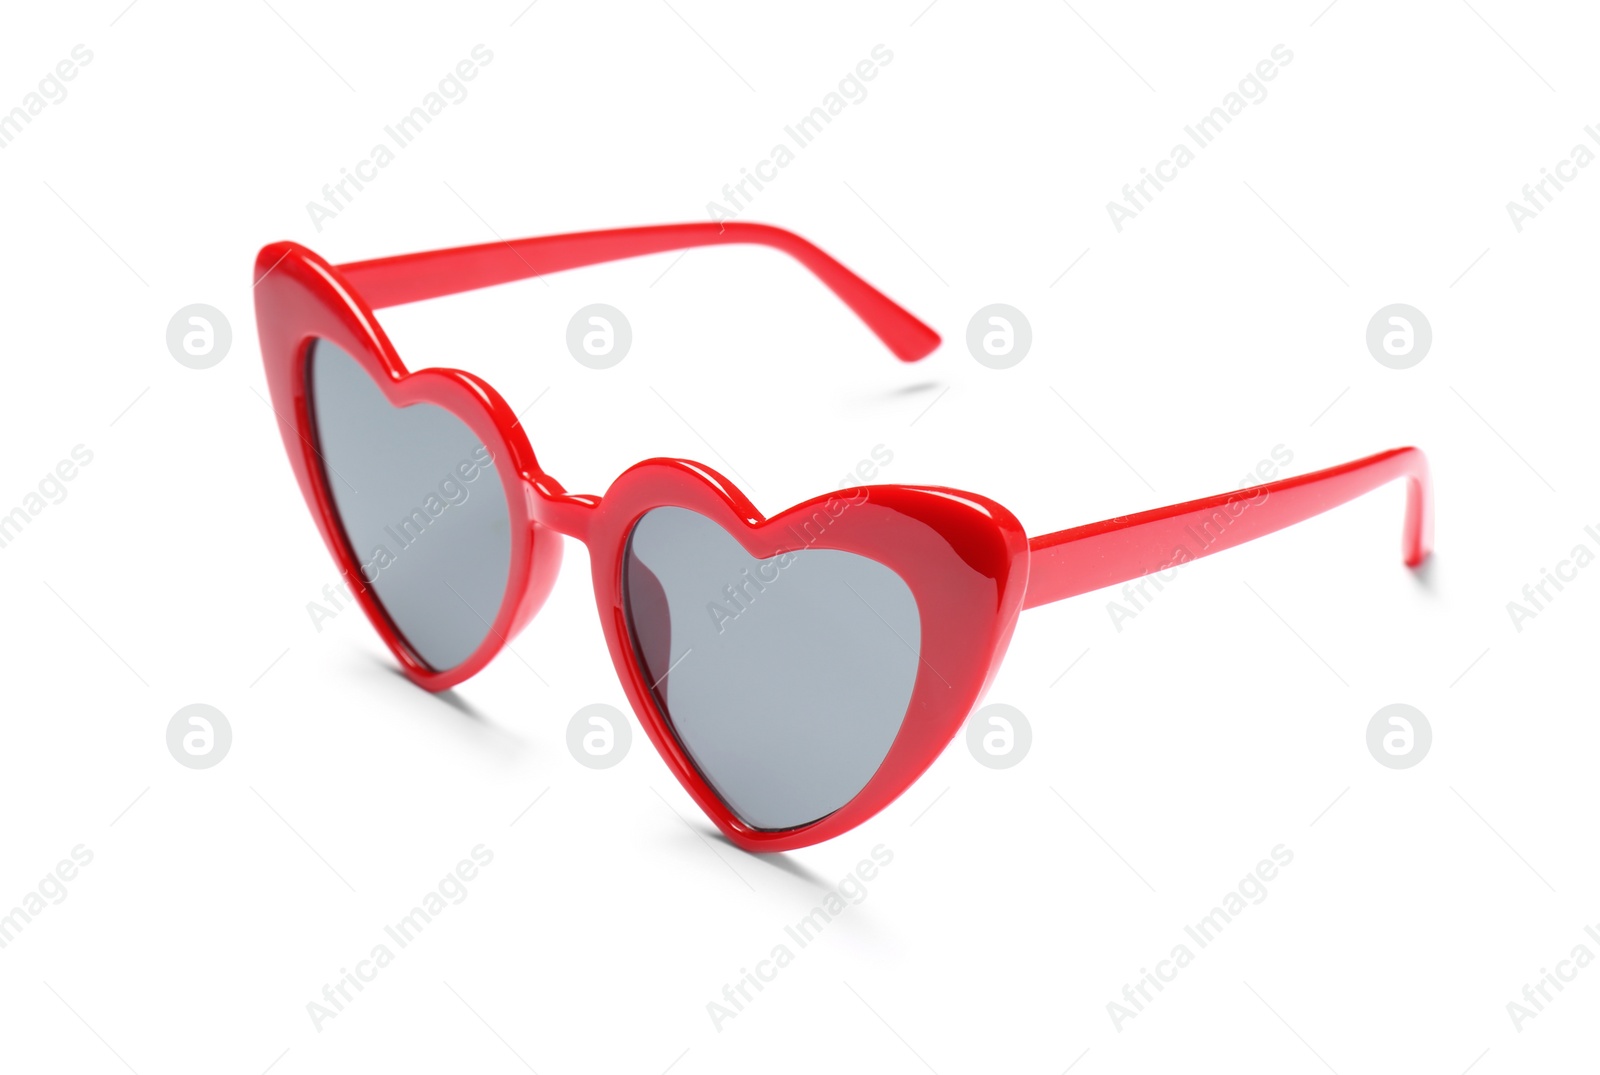 Photo of Stylish heart shaped glasses on white background